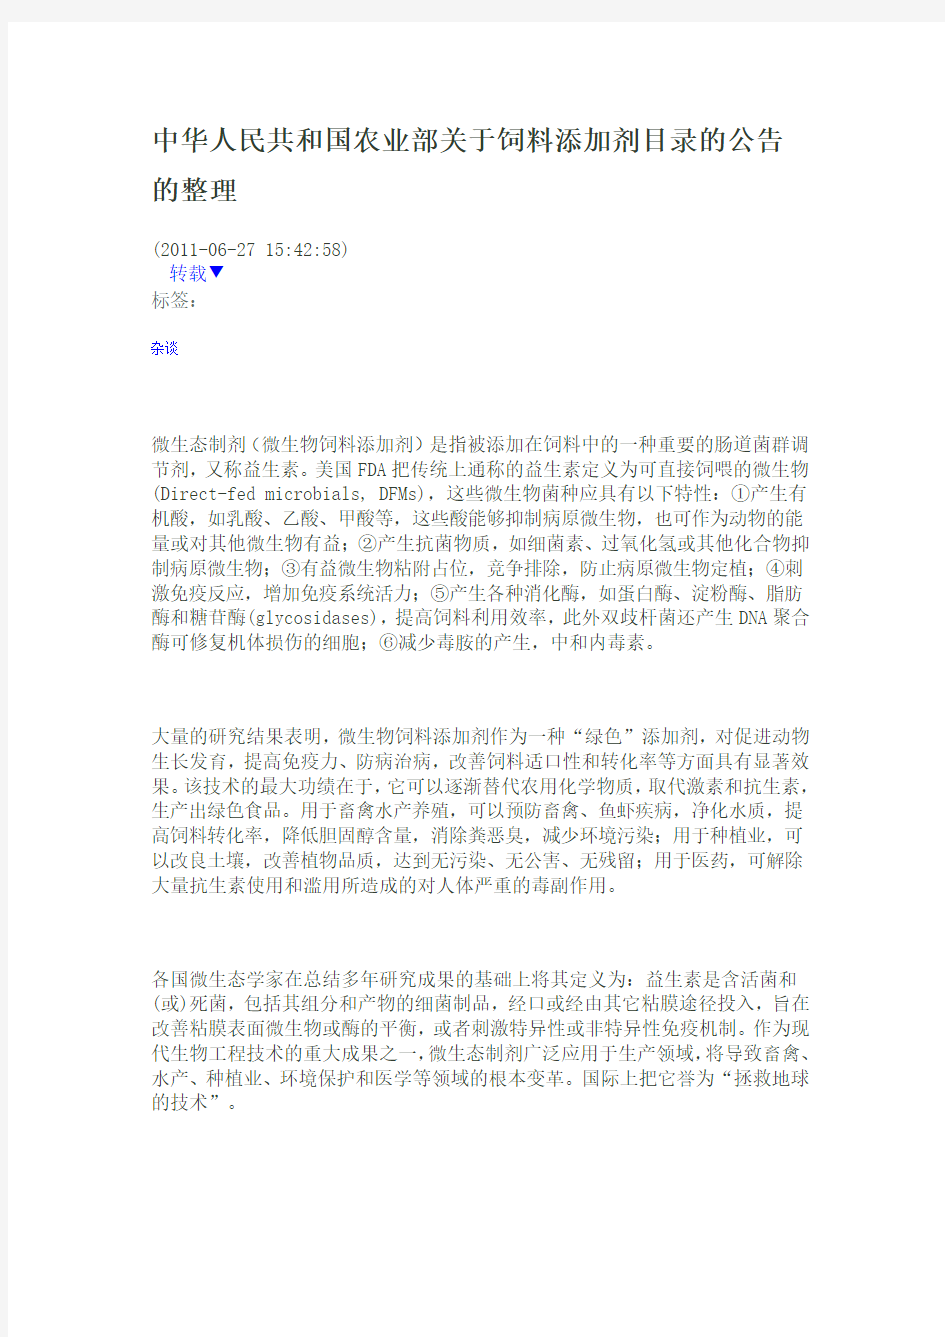 中华人民共和国农业部关于饲料添加剂目录的公告的整理